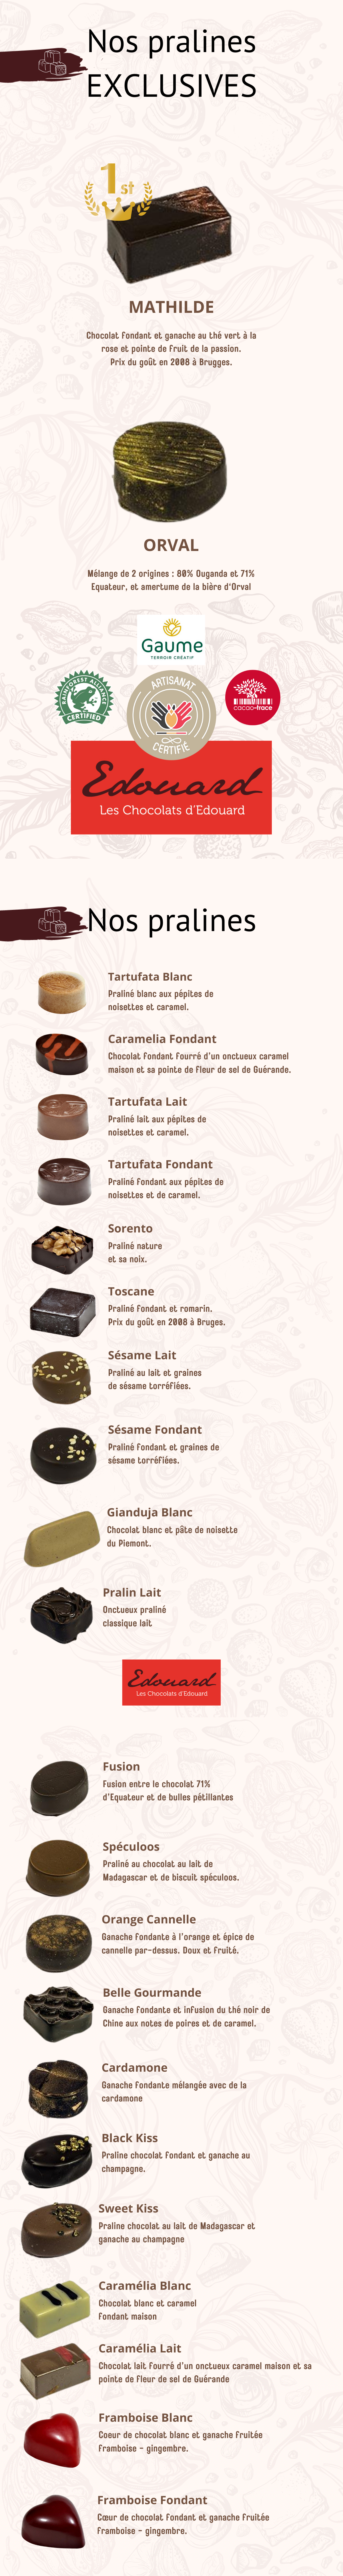 La Fabrique du Chocolat - Artisan Chocolatier à Ornans